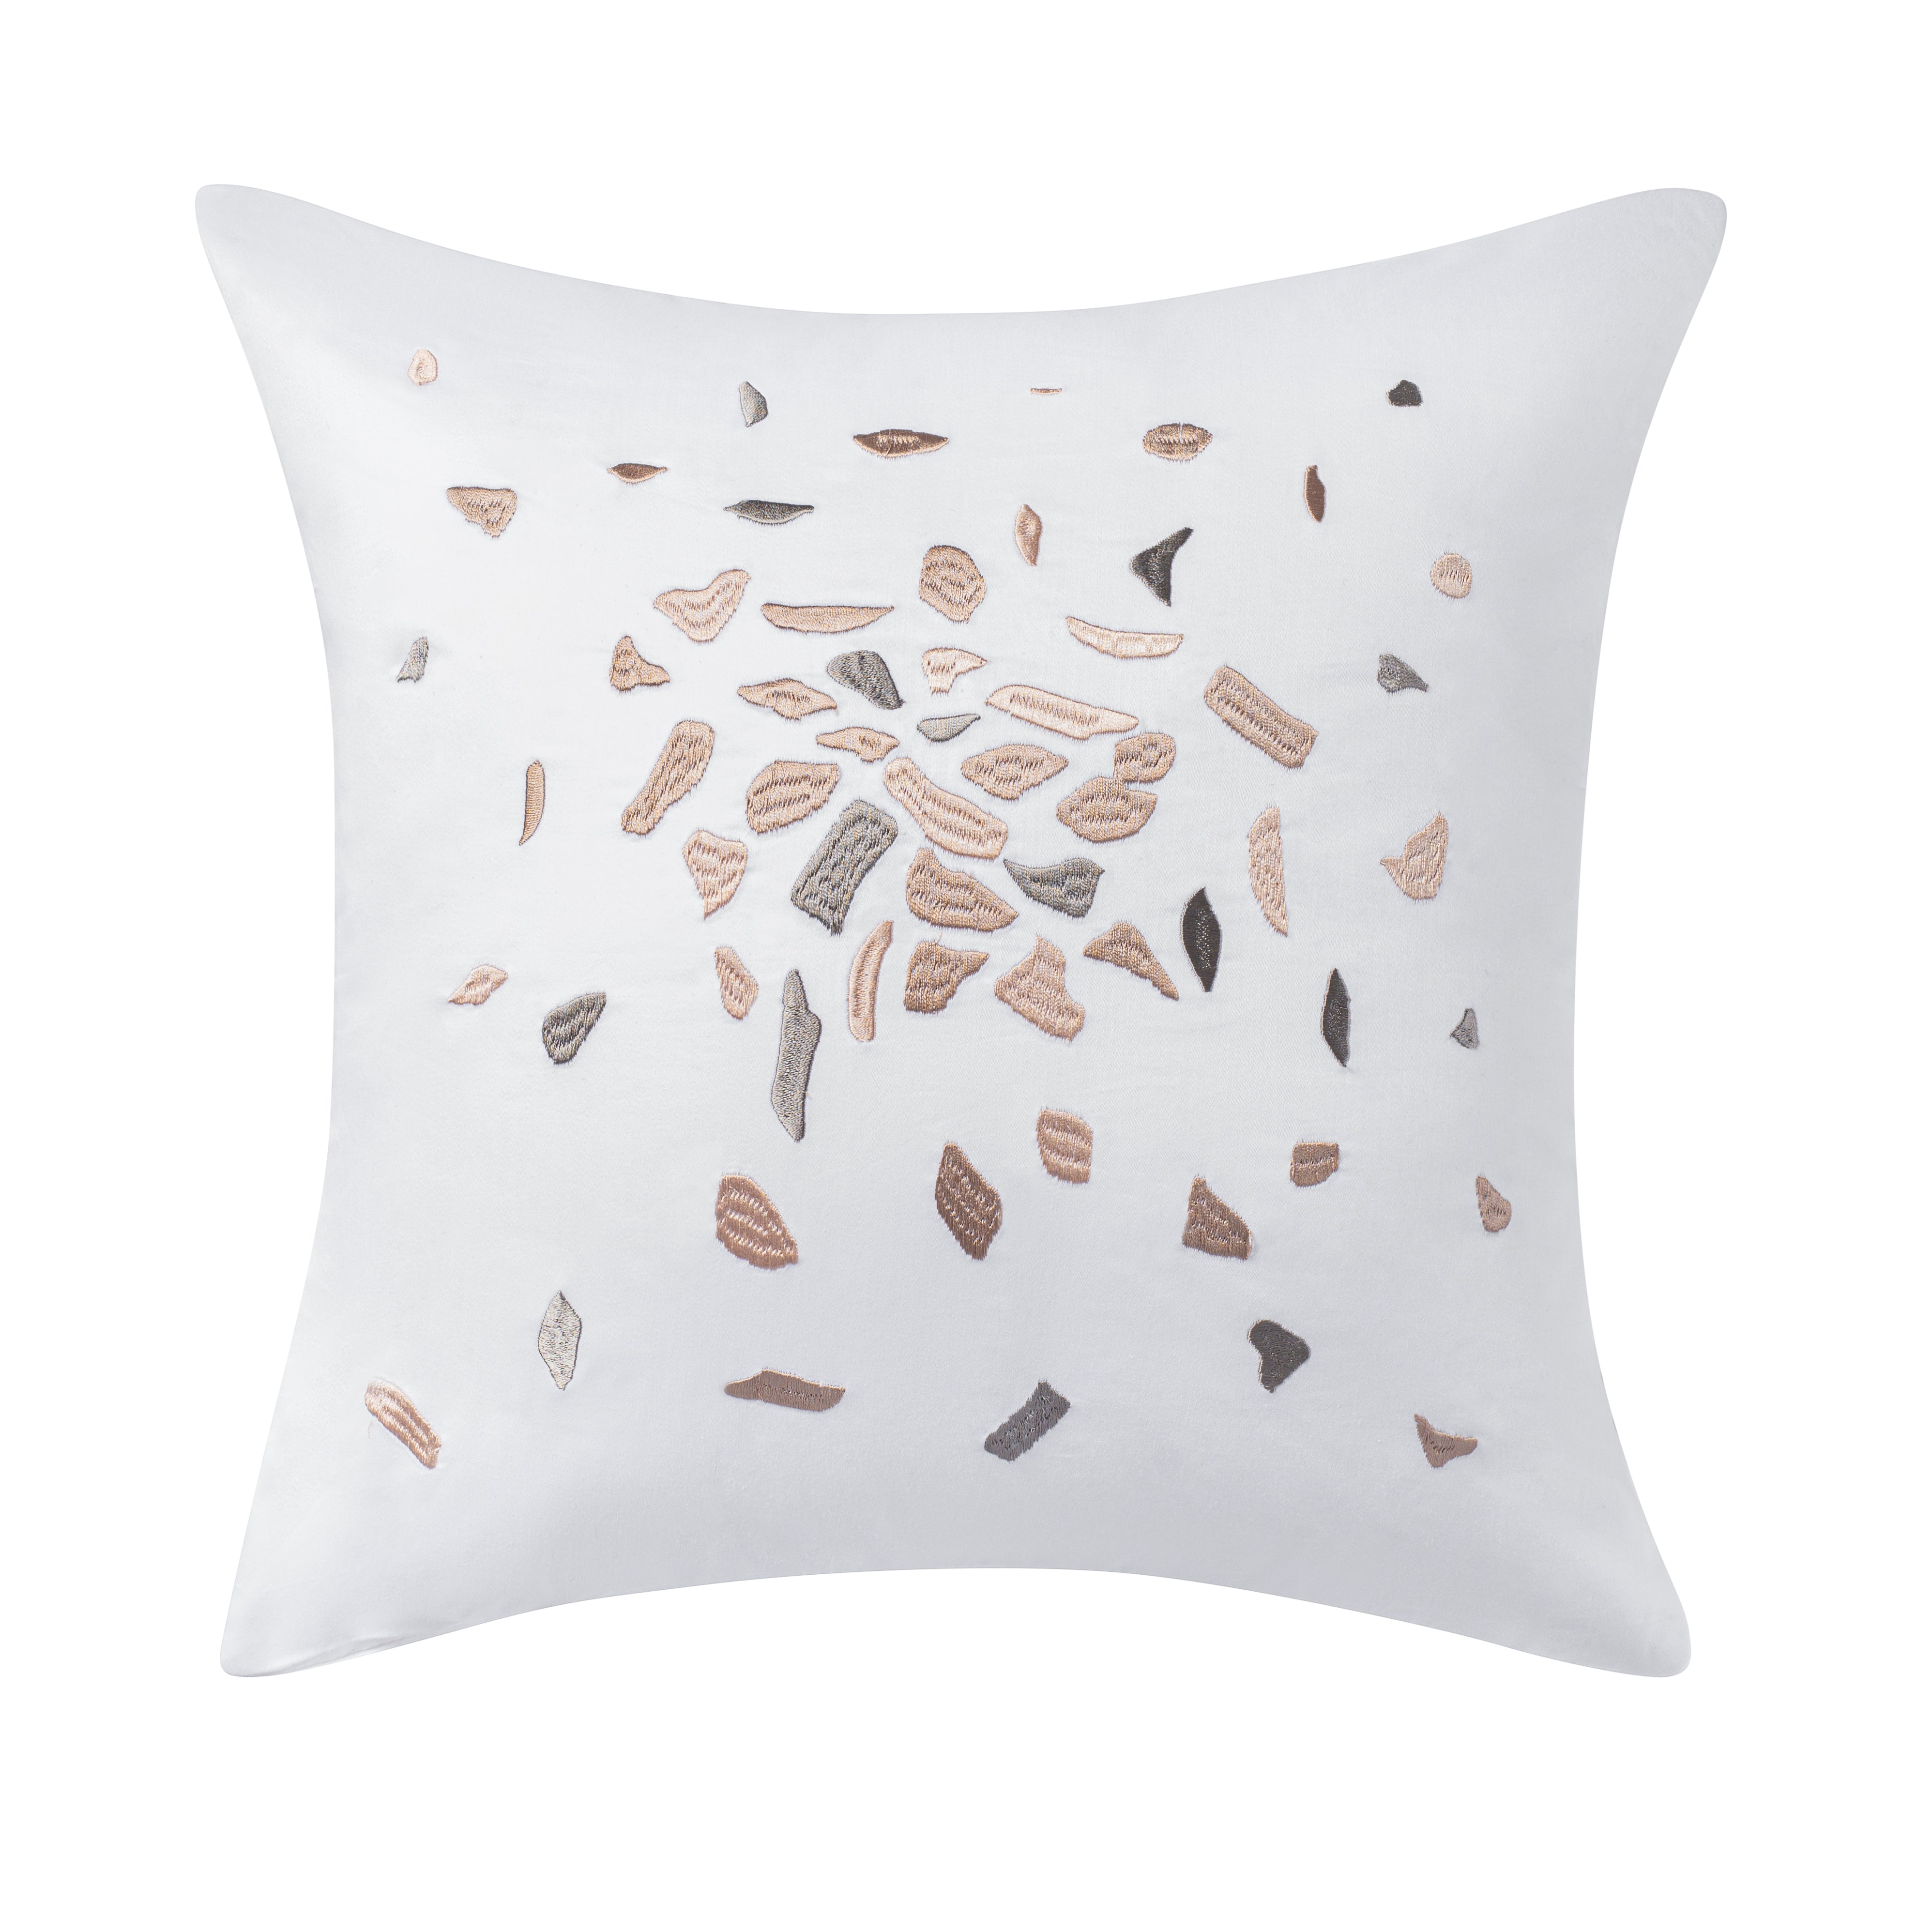 Confetti Decorative Pillow